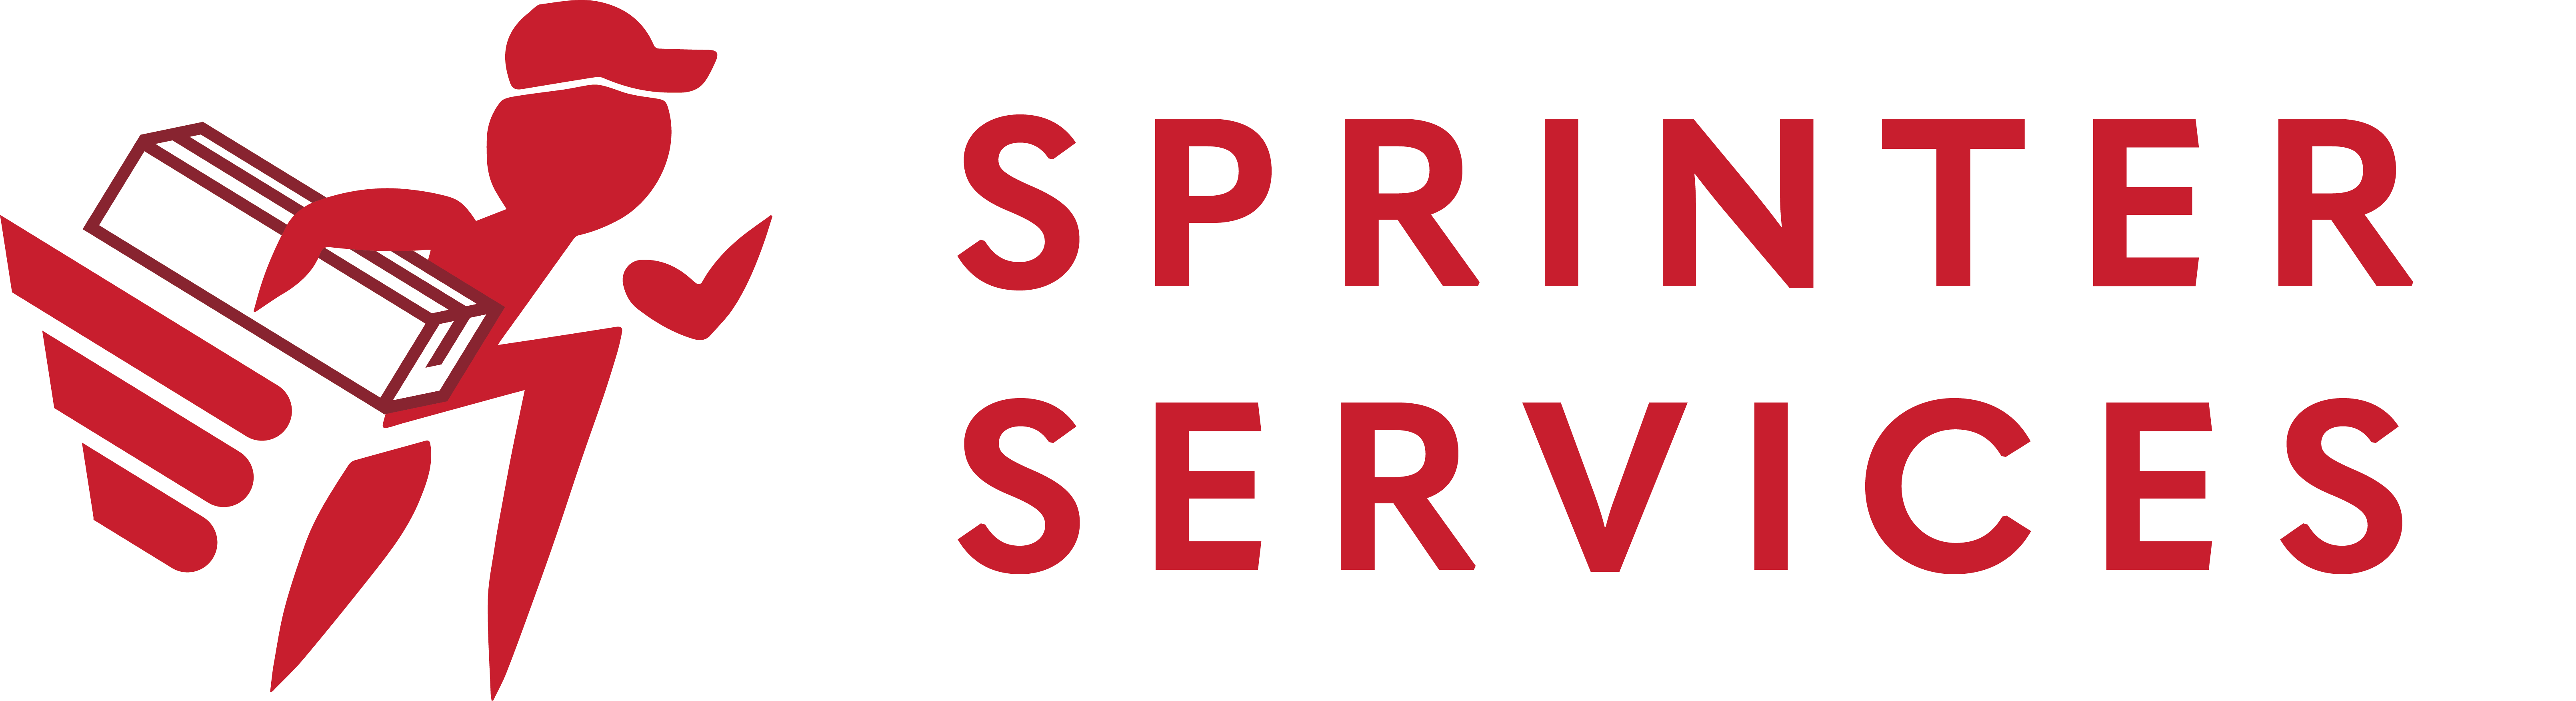 Sprinter Services